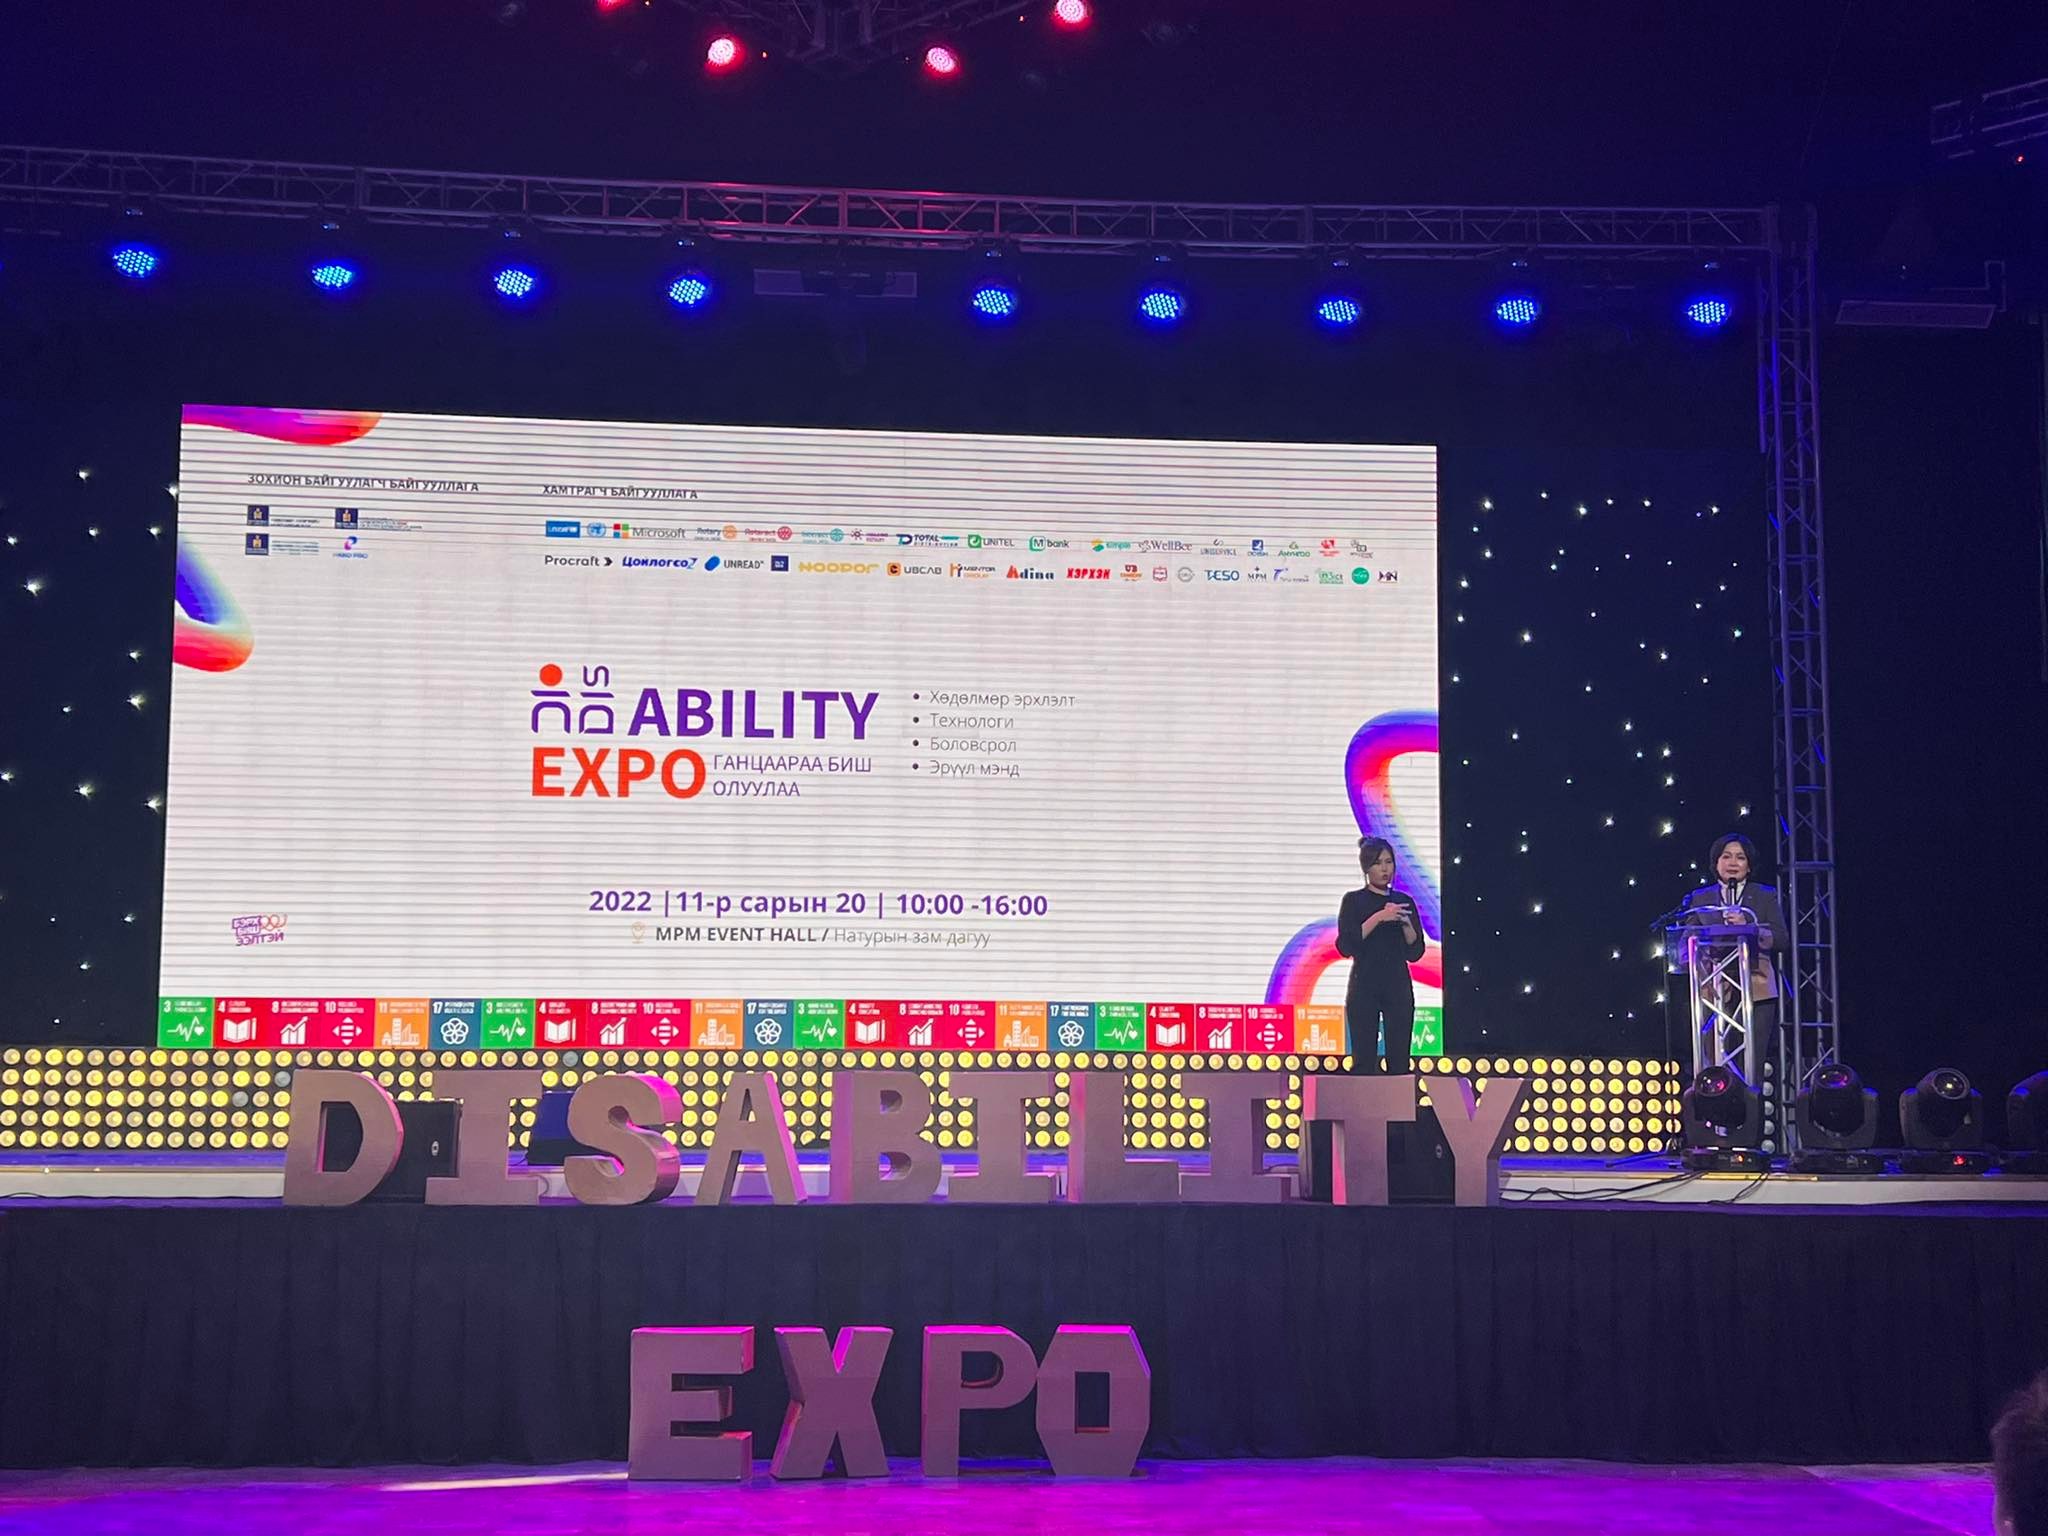 Хөгжлийн бэрхшээлтэй хүний эрхийн өдрийг угтсан “Disability Expo-2022” арга хэмжээ боллоо